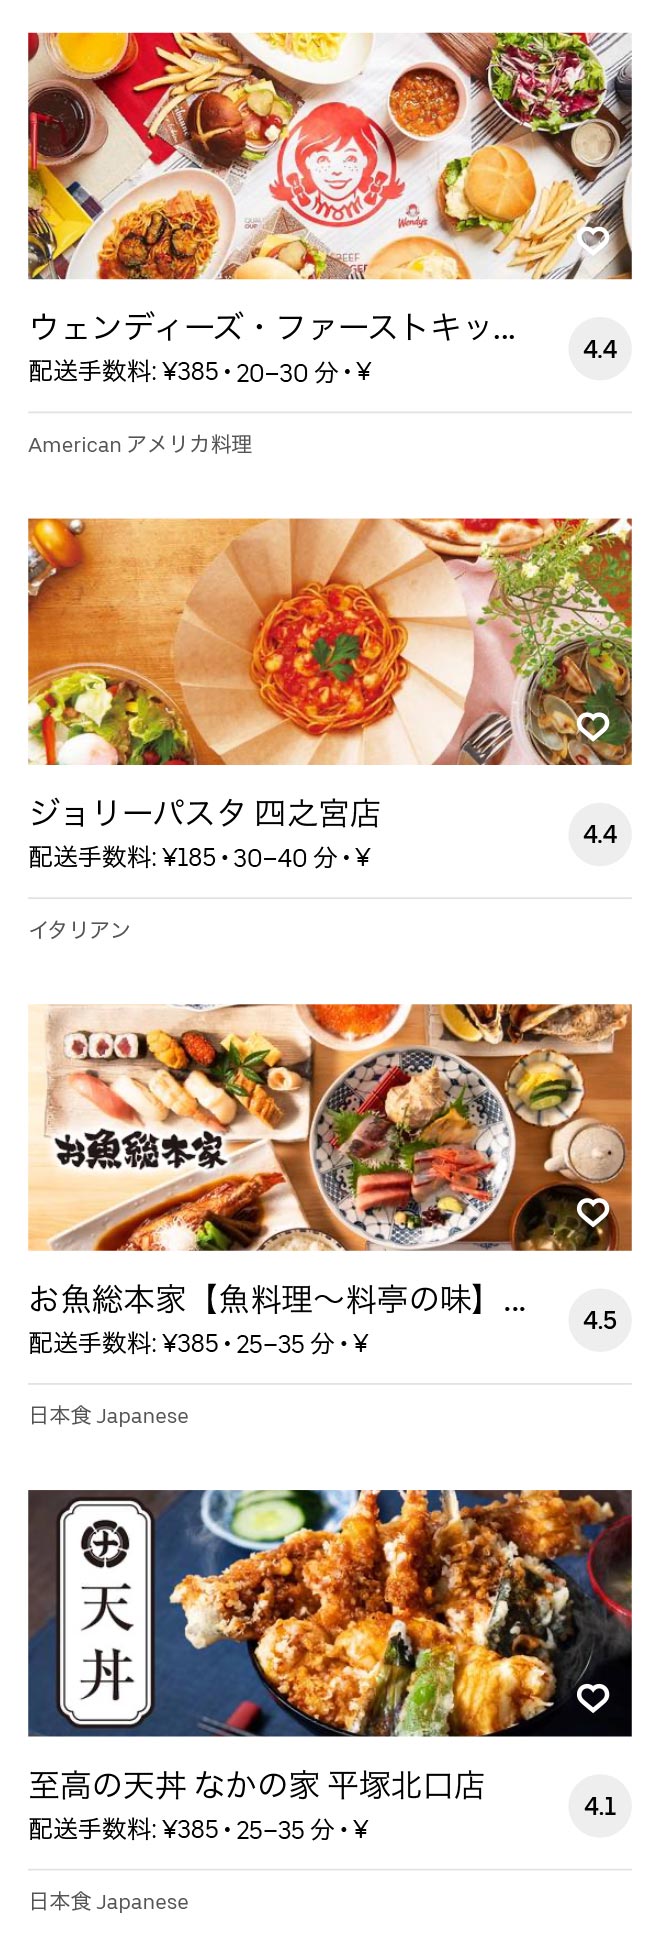 Ohno shougaku menu 2008 06